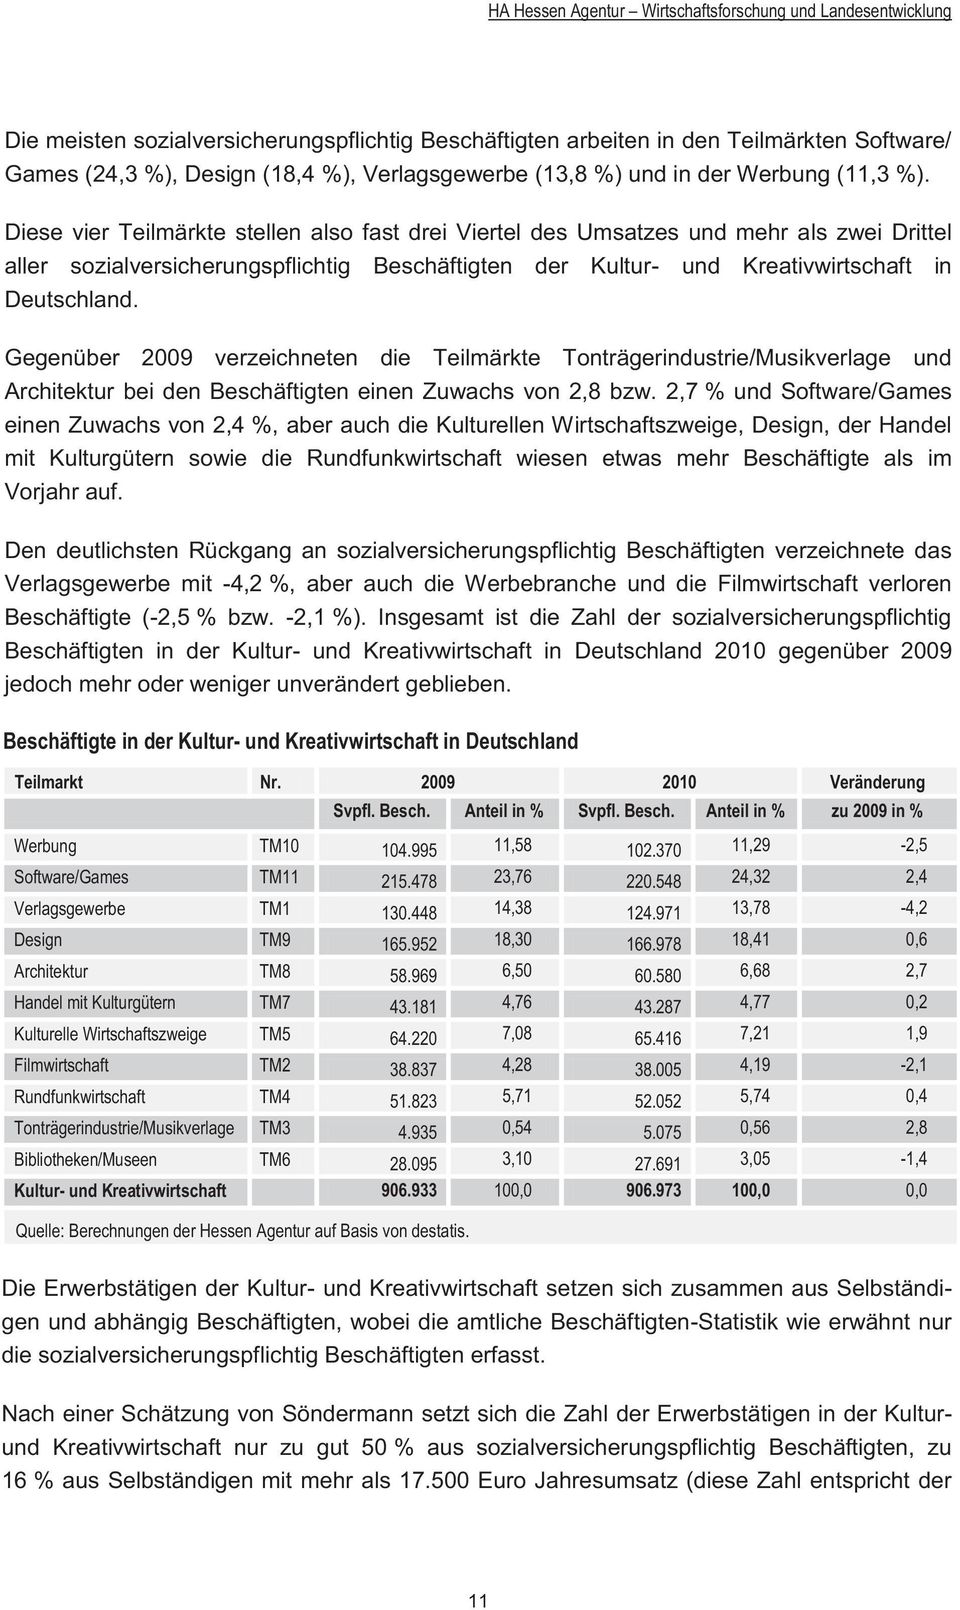 Diese vier Teilmärkte stellen also fast drei Viertel des Umsatzes und mehr als zwei Drittel aller sozialversicherungspflichtig Beschäftigten der Kultur- und Kreativwirtschaft in Deutschland.